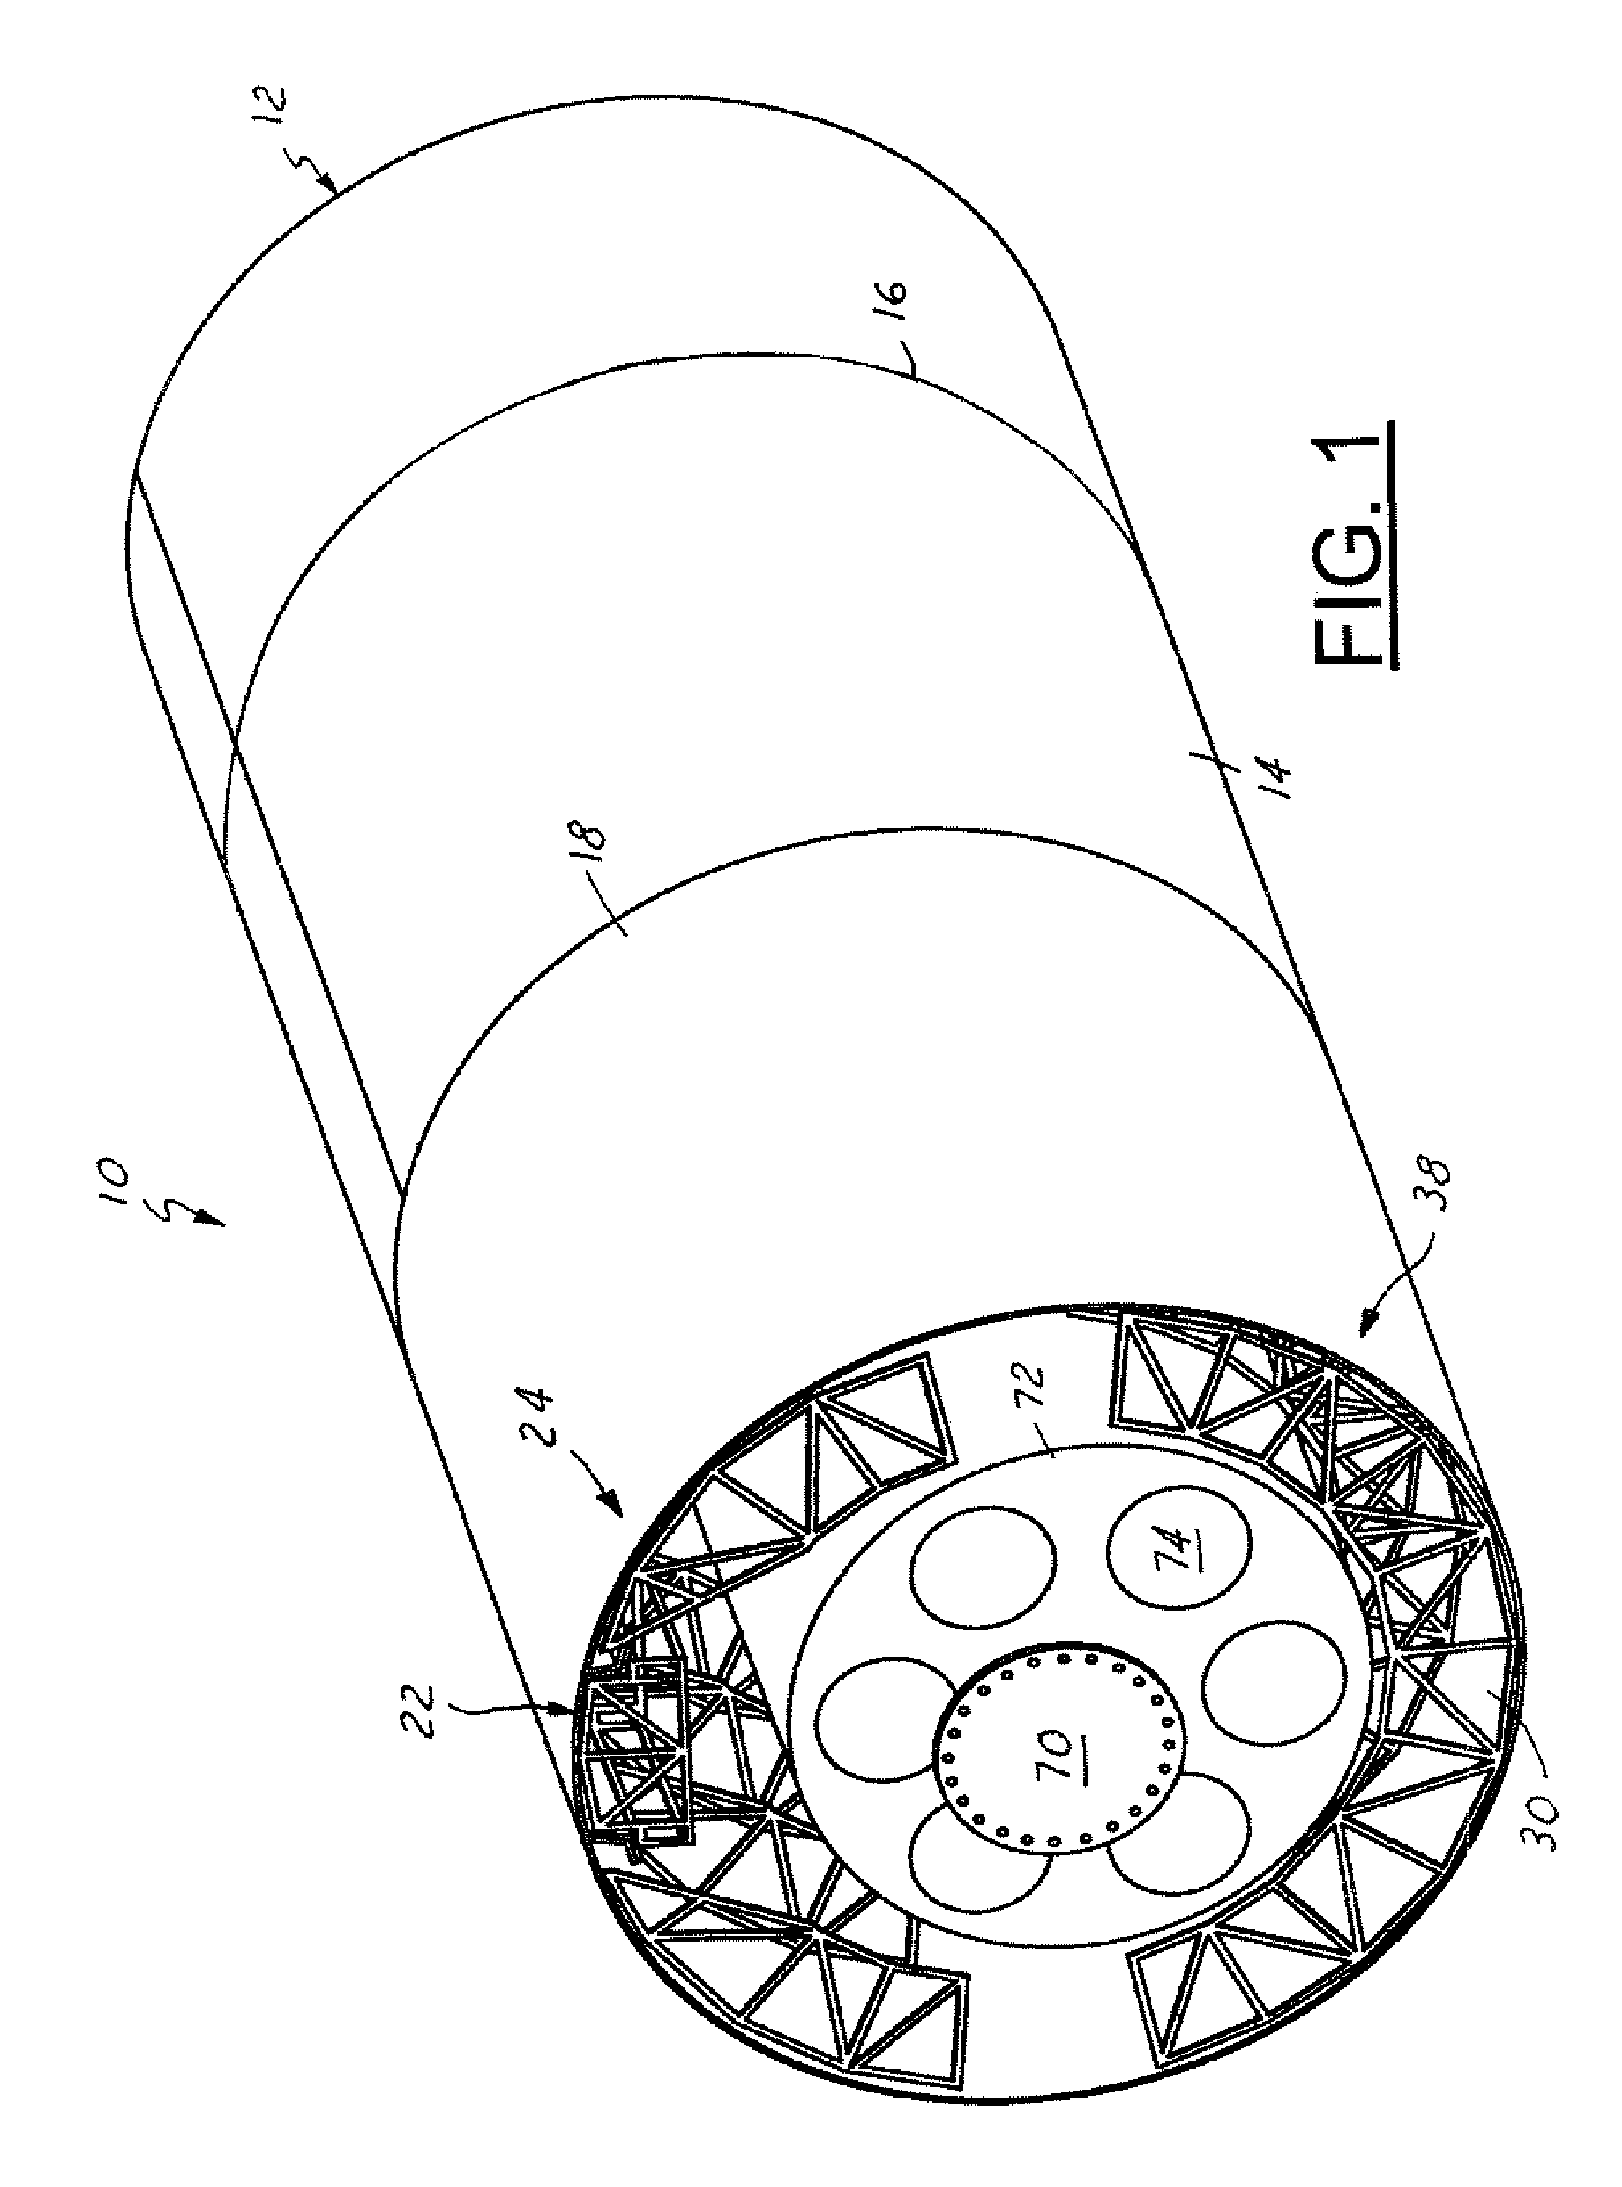 Segmented flexible barrel lay-up mandrel